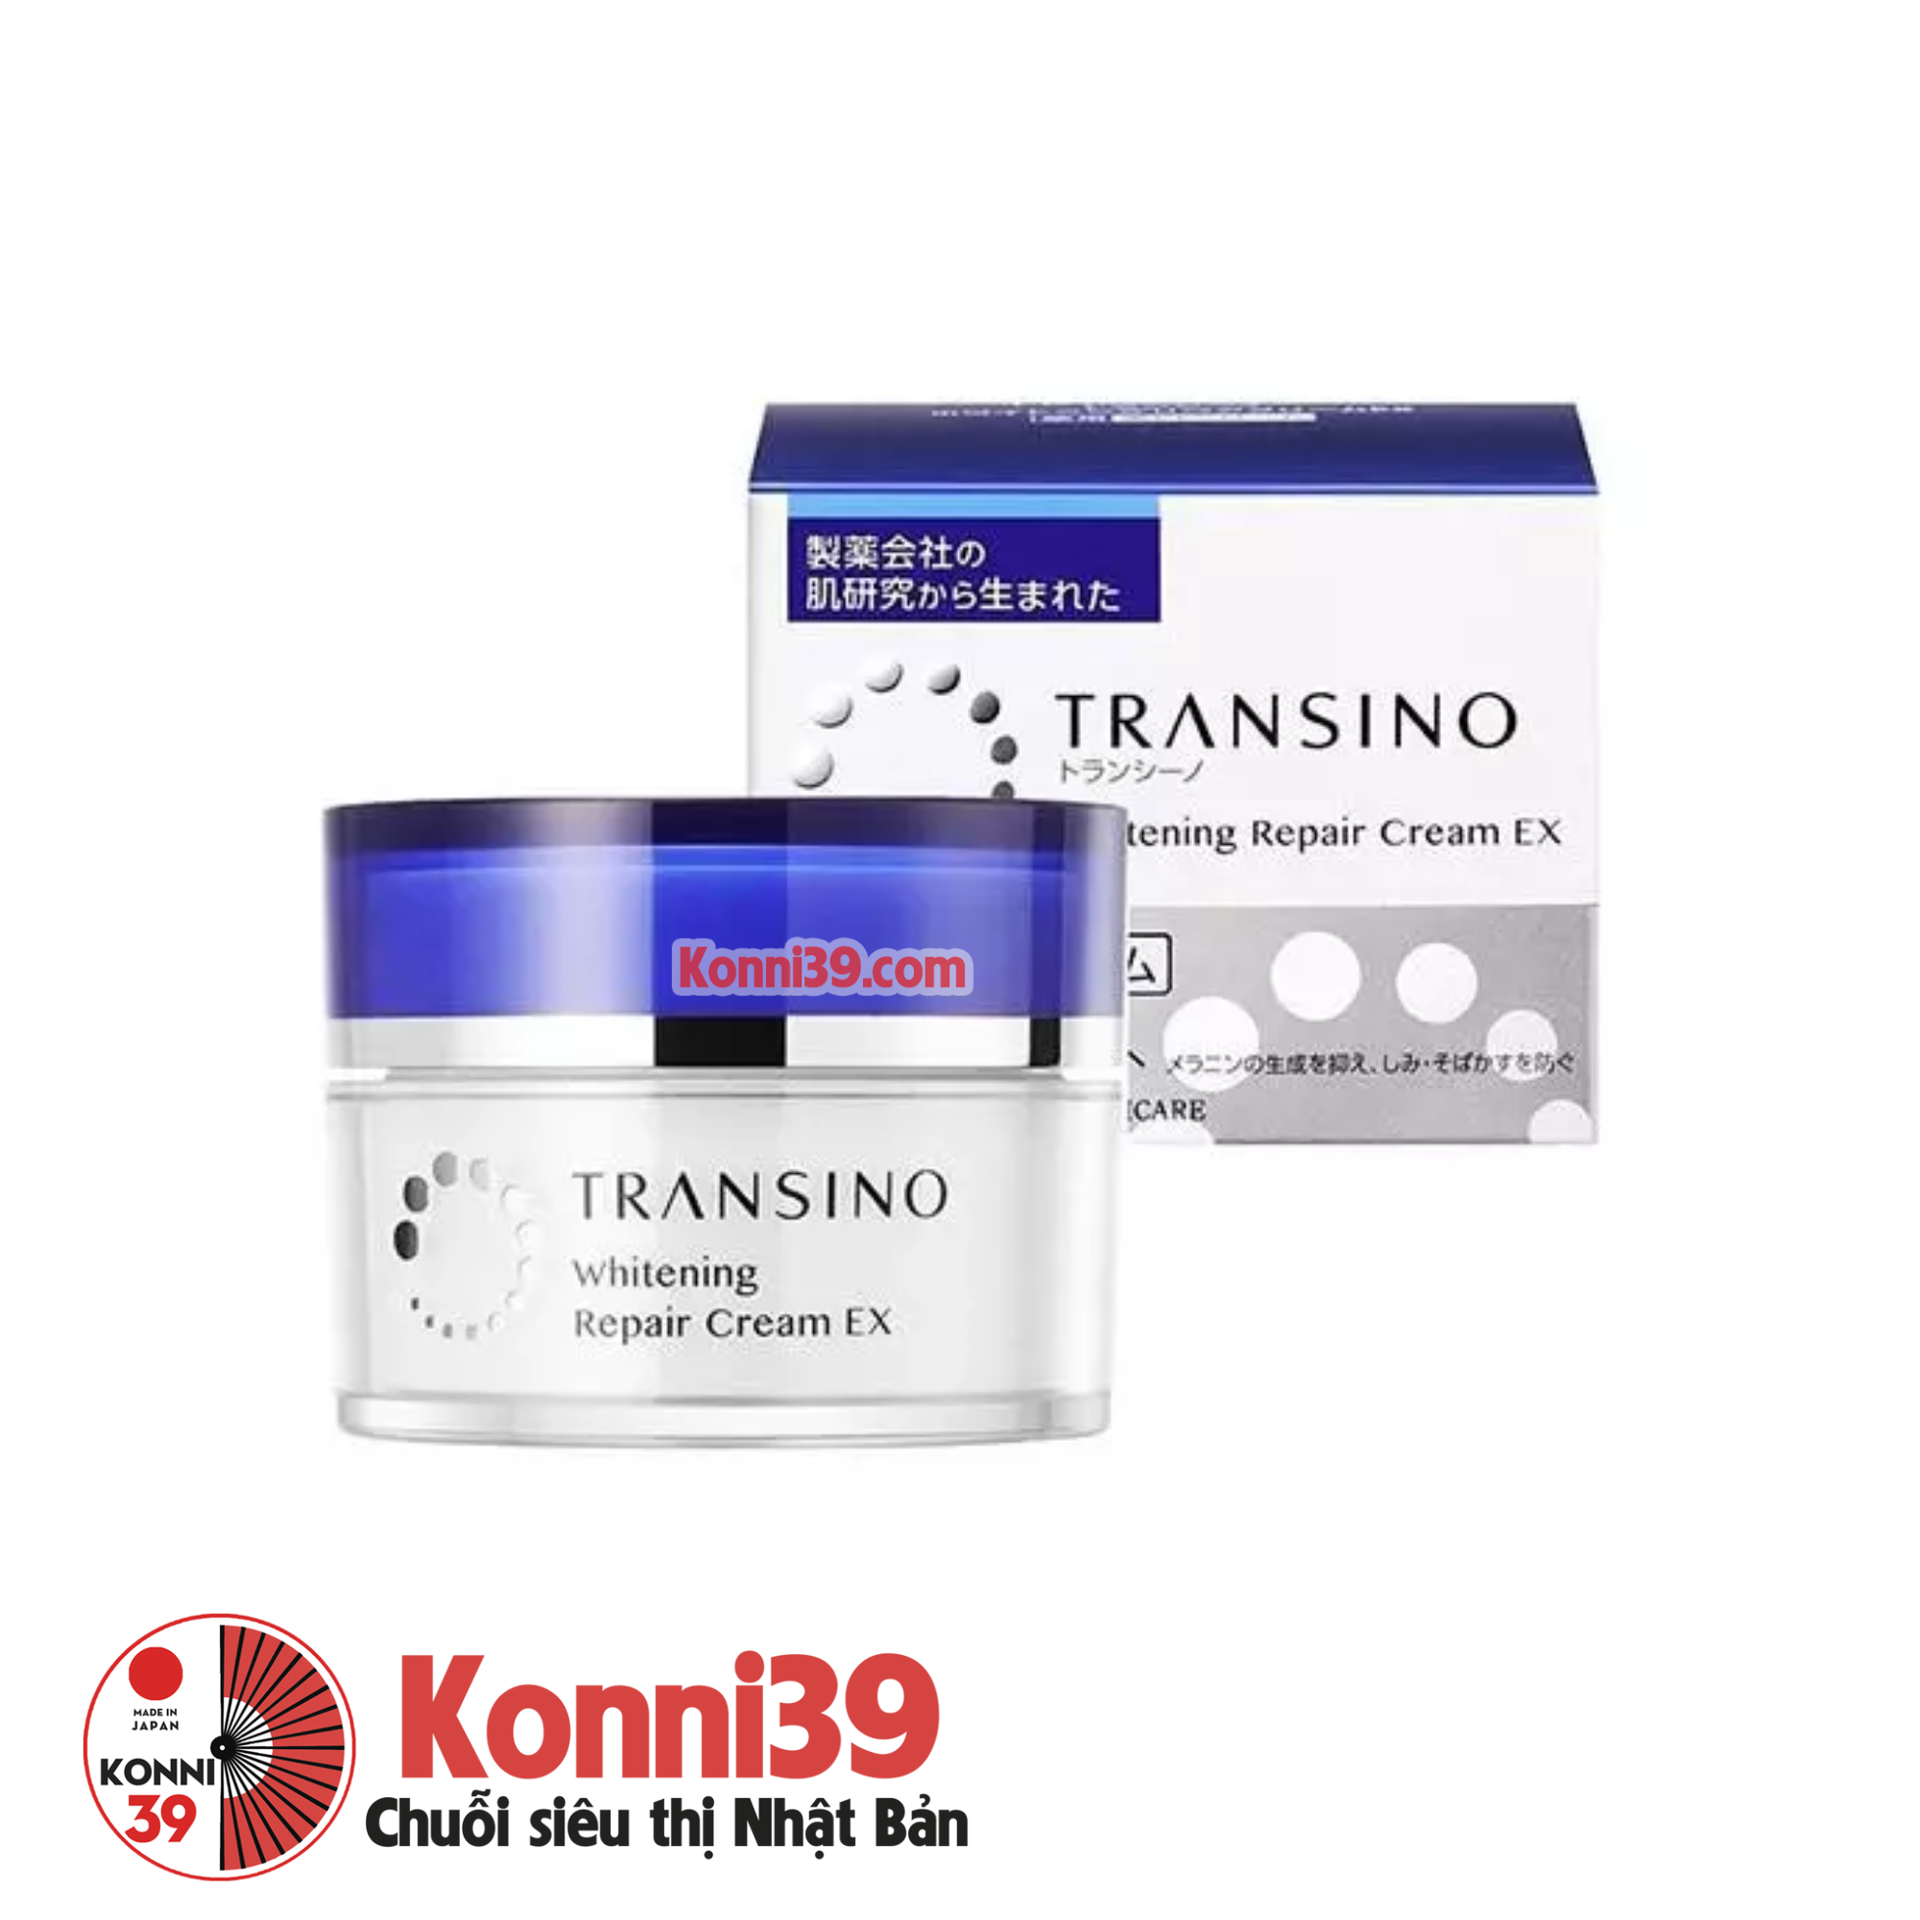 Kem dưỡng ẩm Transino Whitening Repair Cream EX trị nám trắng da 35g